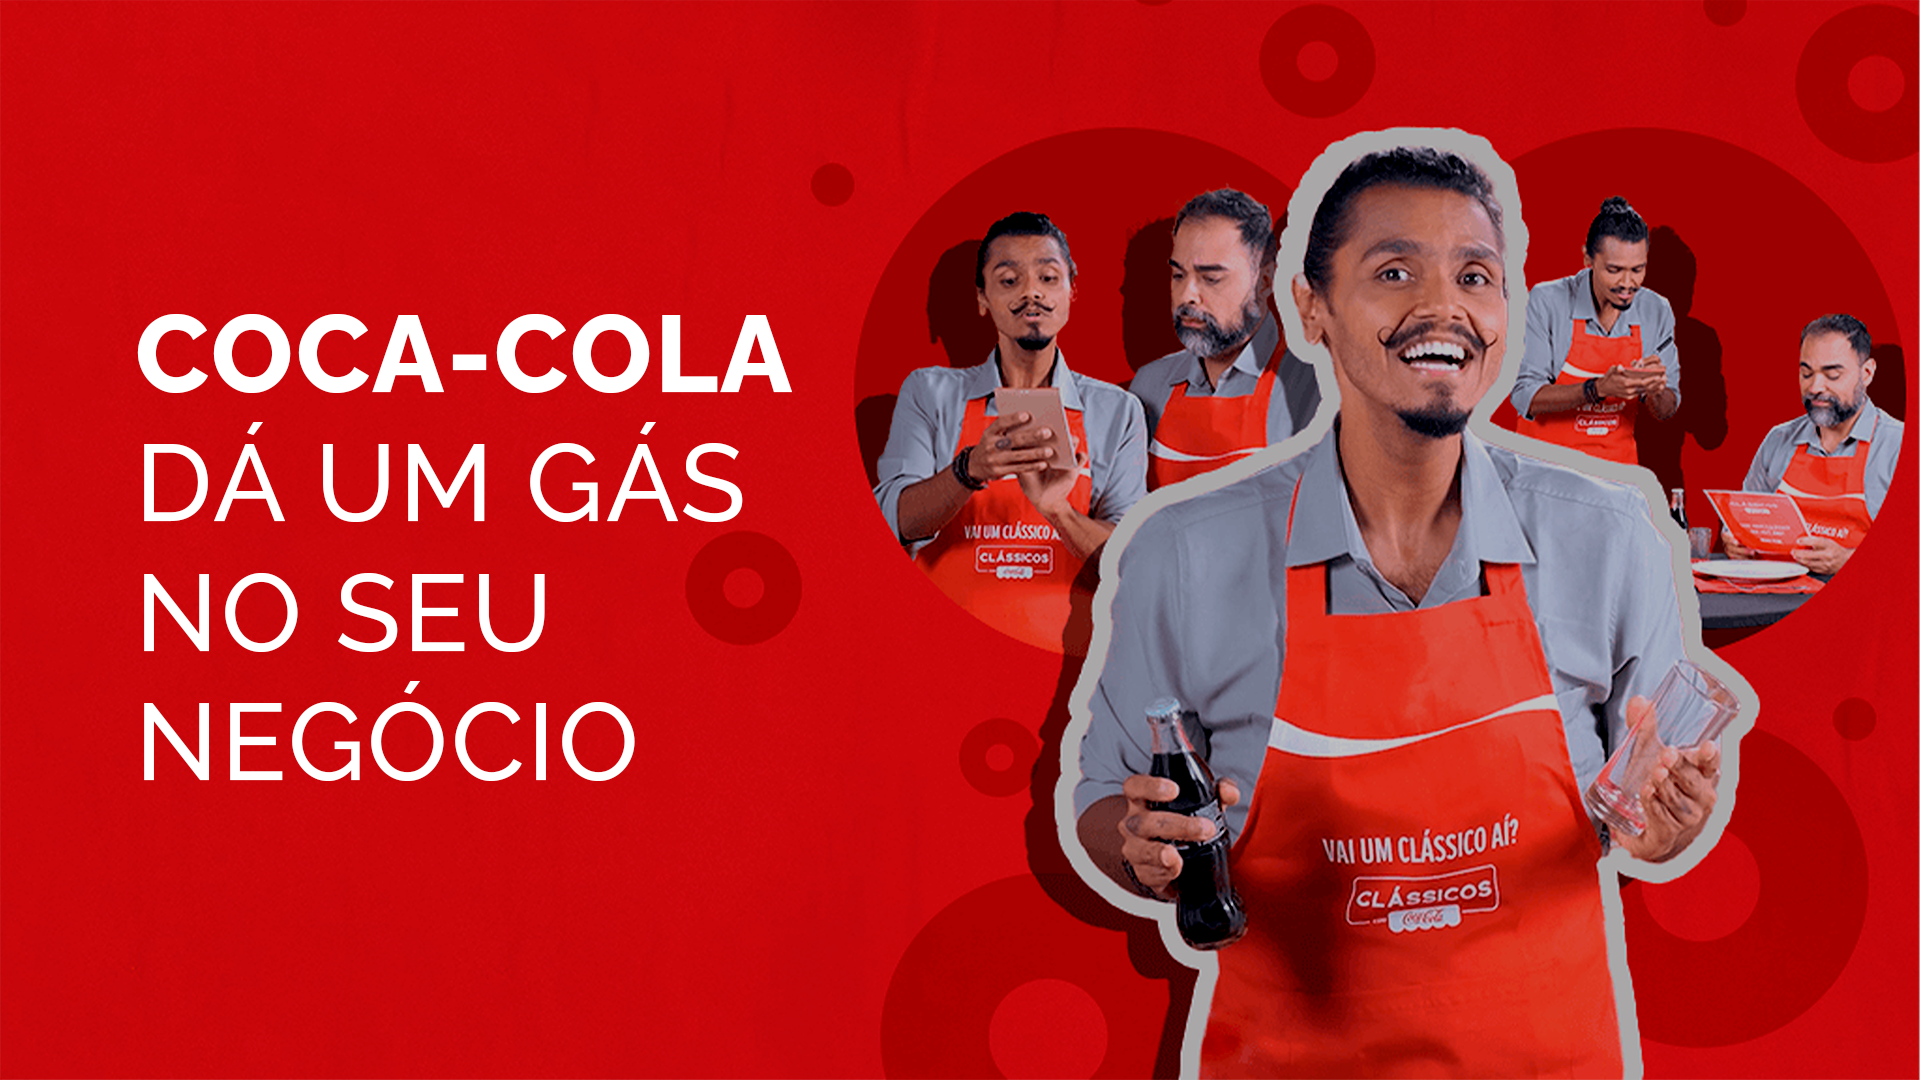 Coca-Cola dá um gás no seu negócio